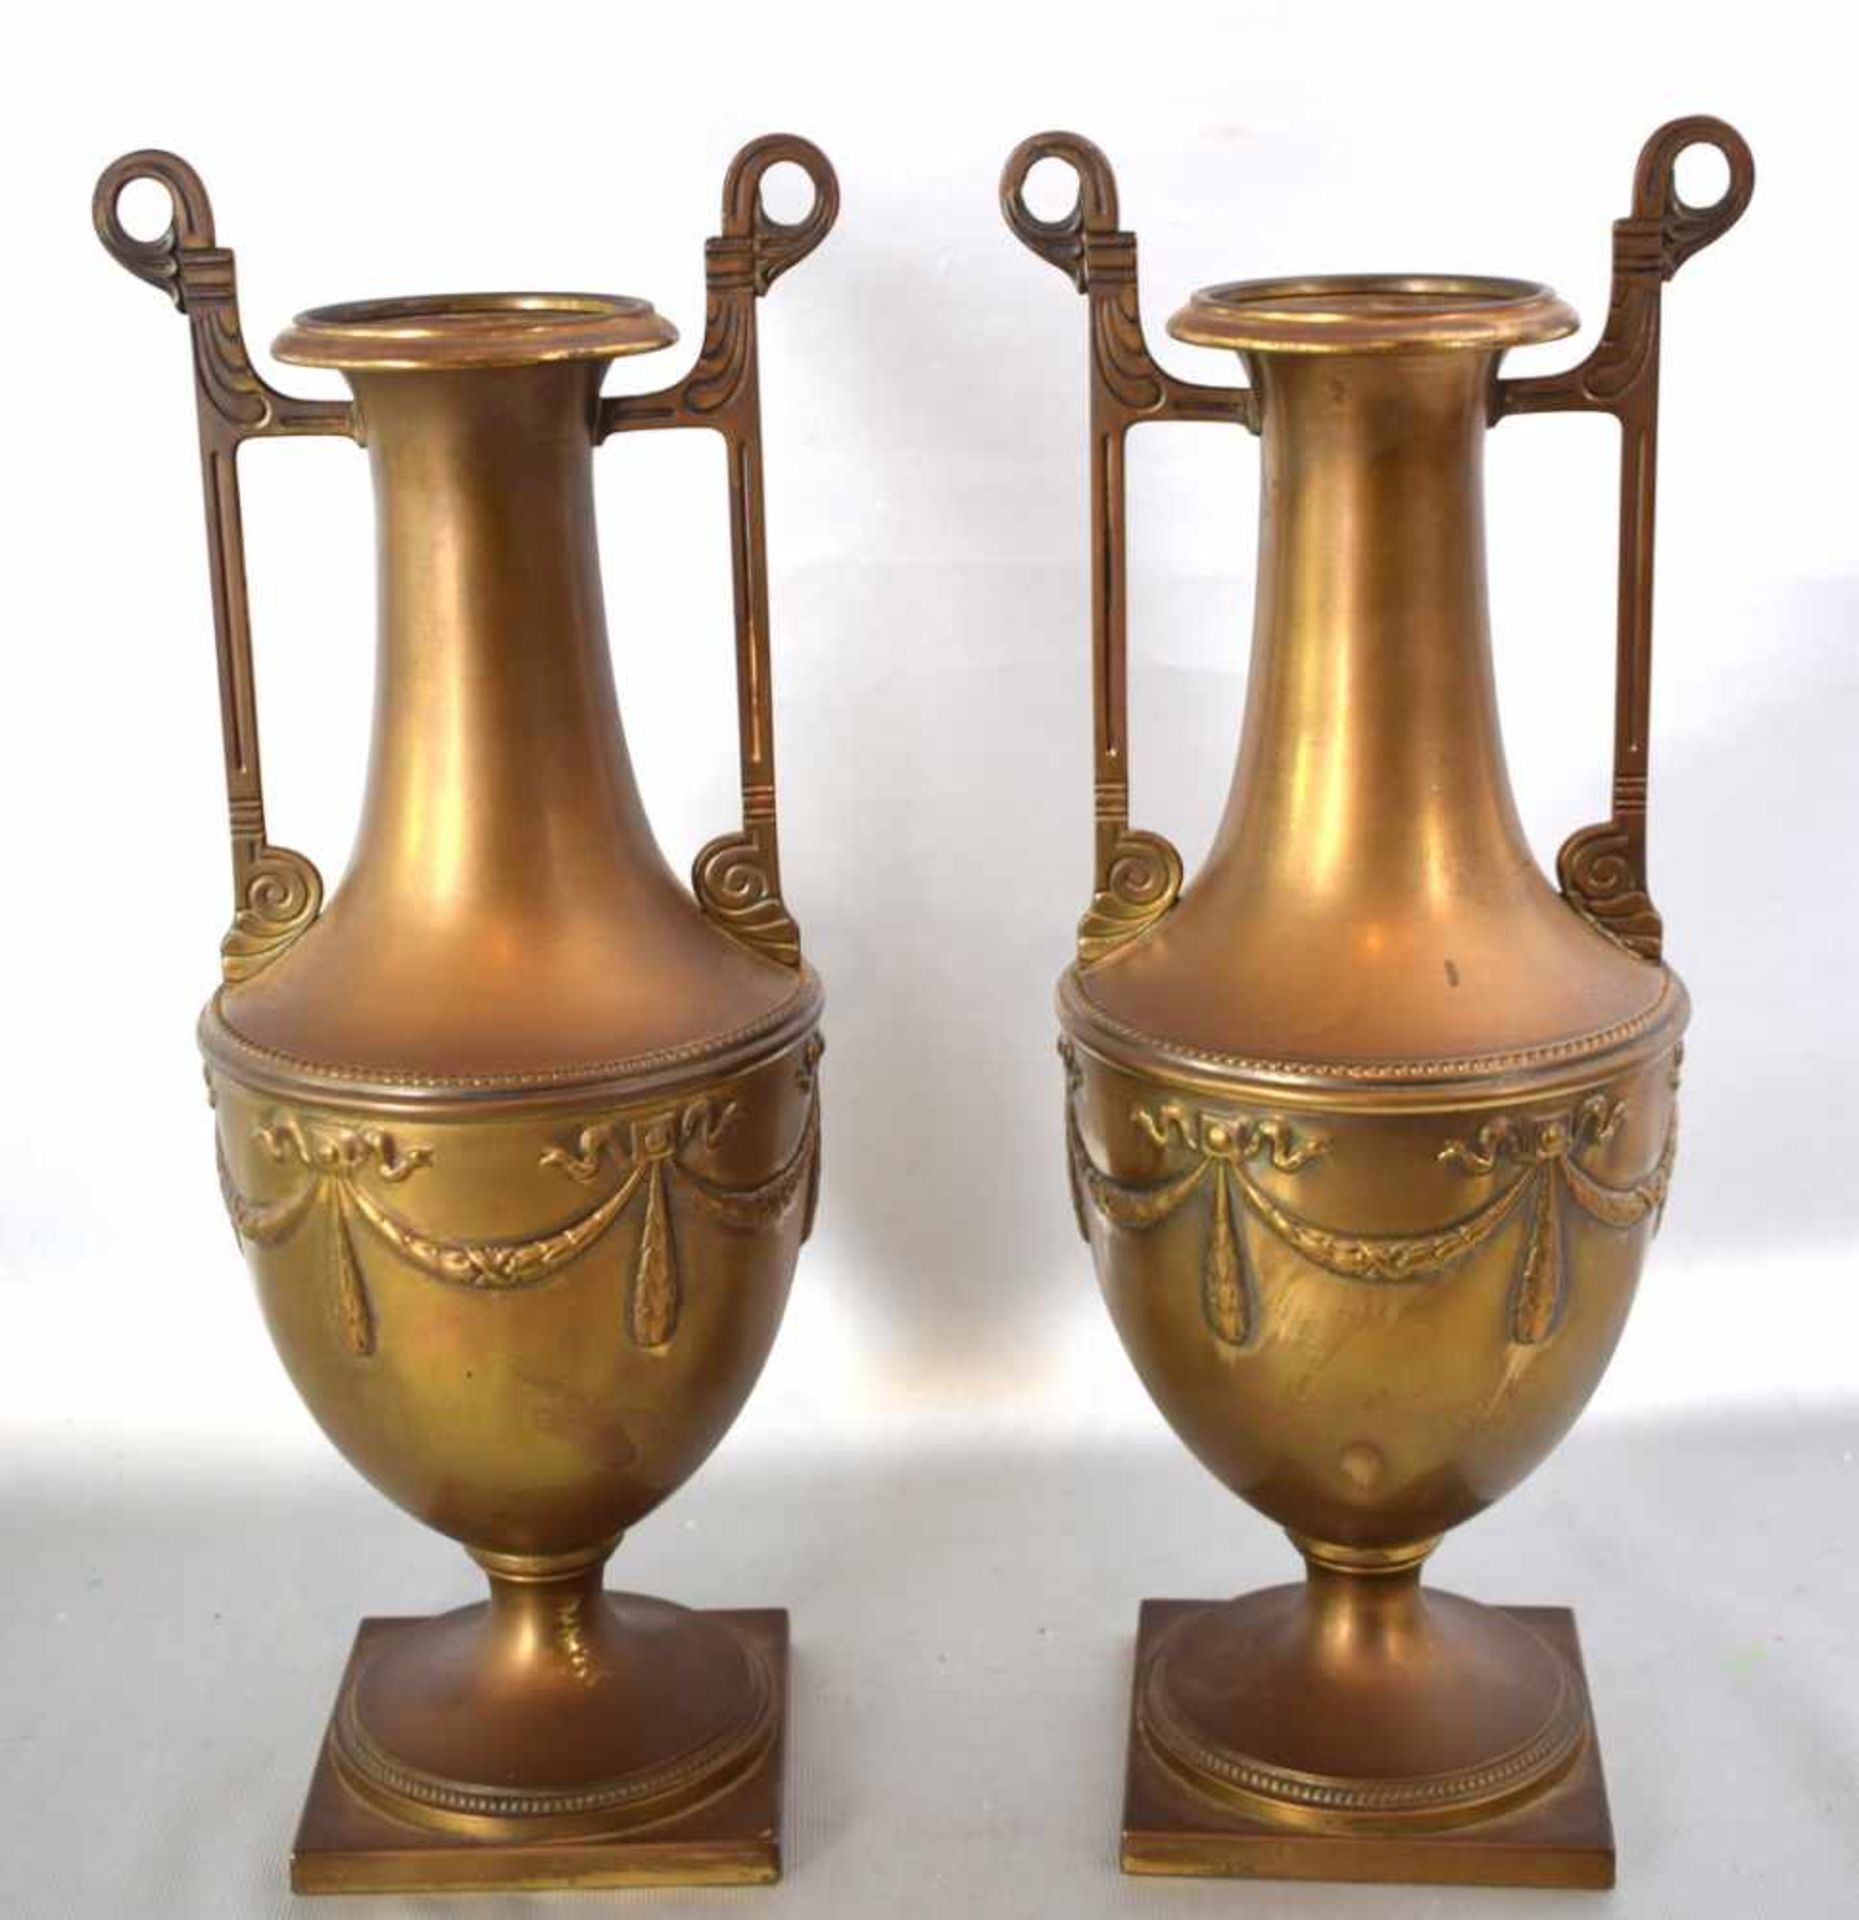 Paar Vasen Messing, kantiger Sockel, Wandung in Amphorenform, zwei verzierte Griffe, H 35 cm, um